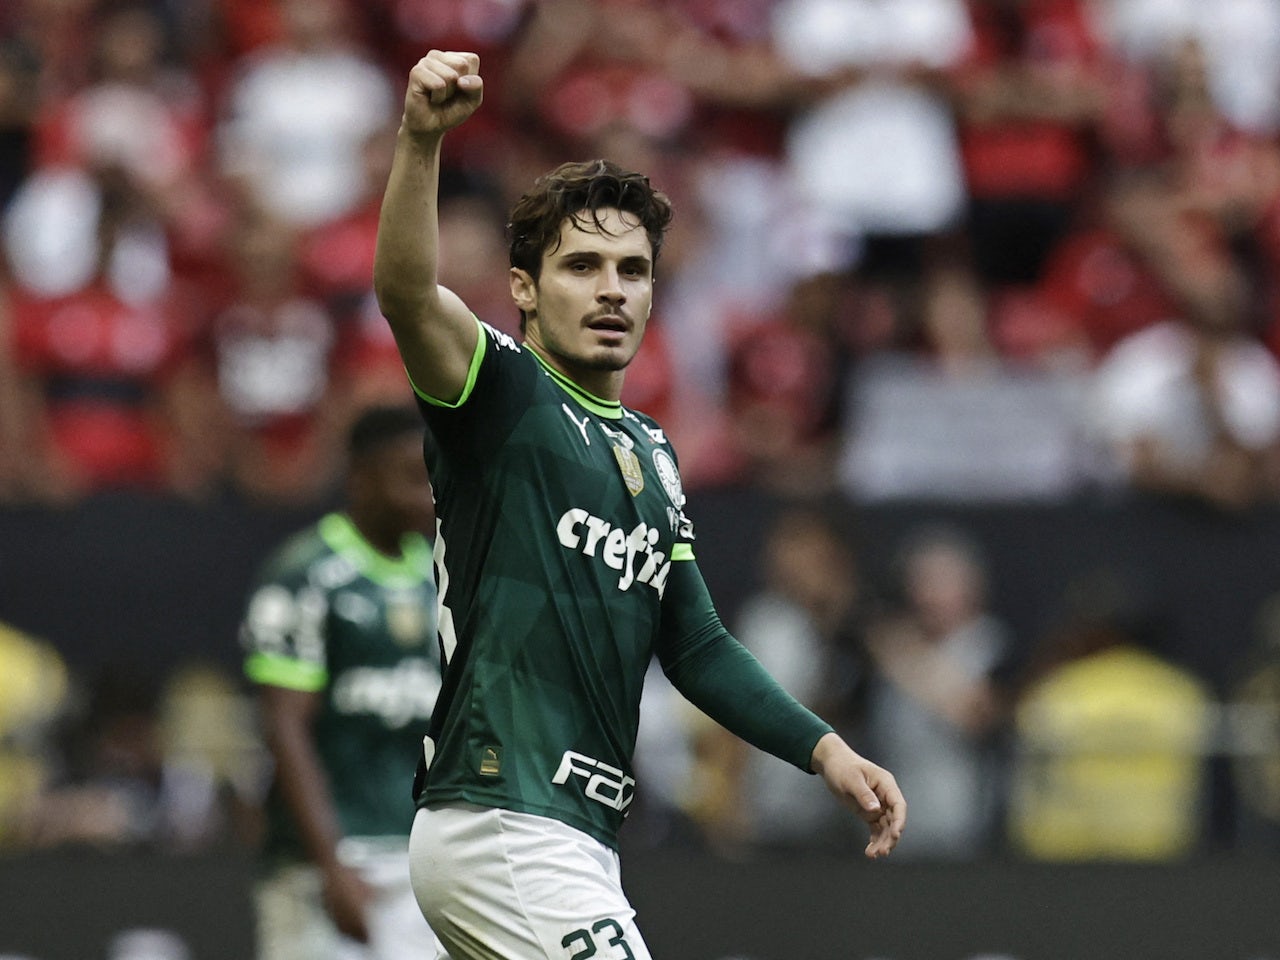 Copa Libertadores Preview: Palmeiras vs. Gremi